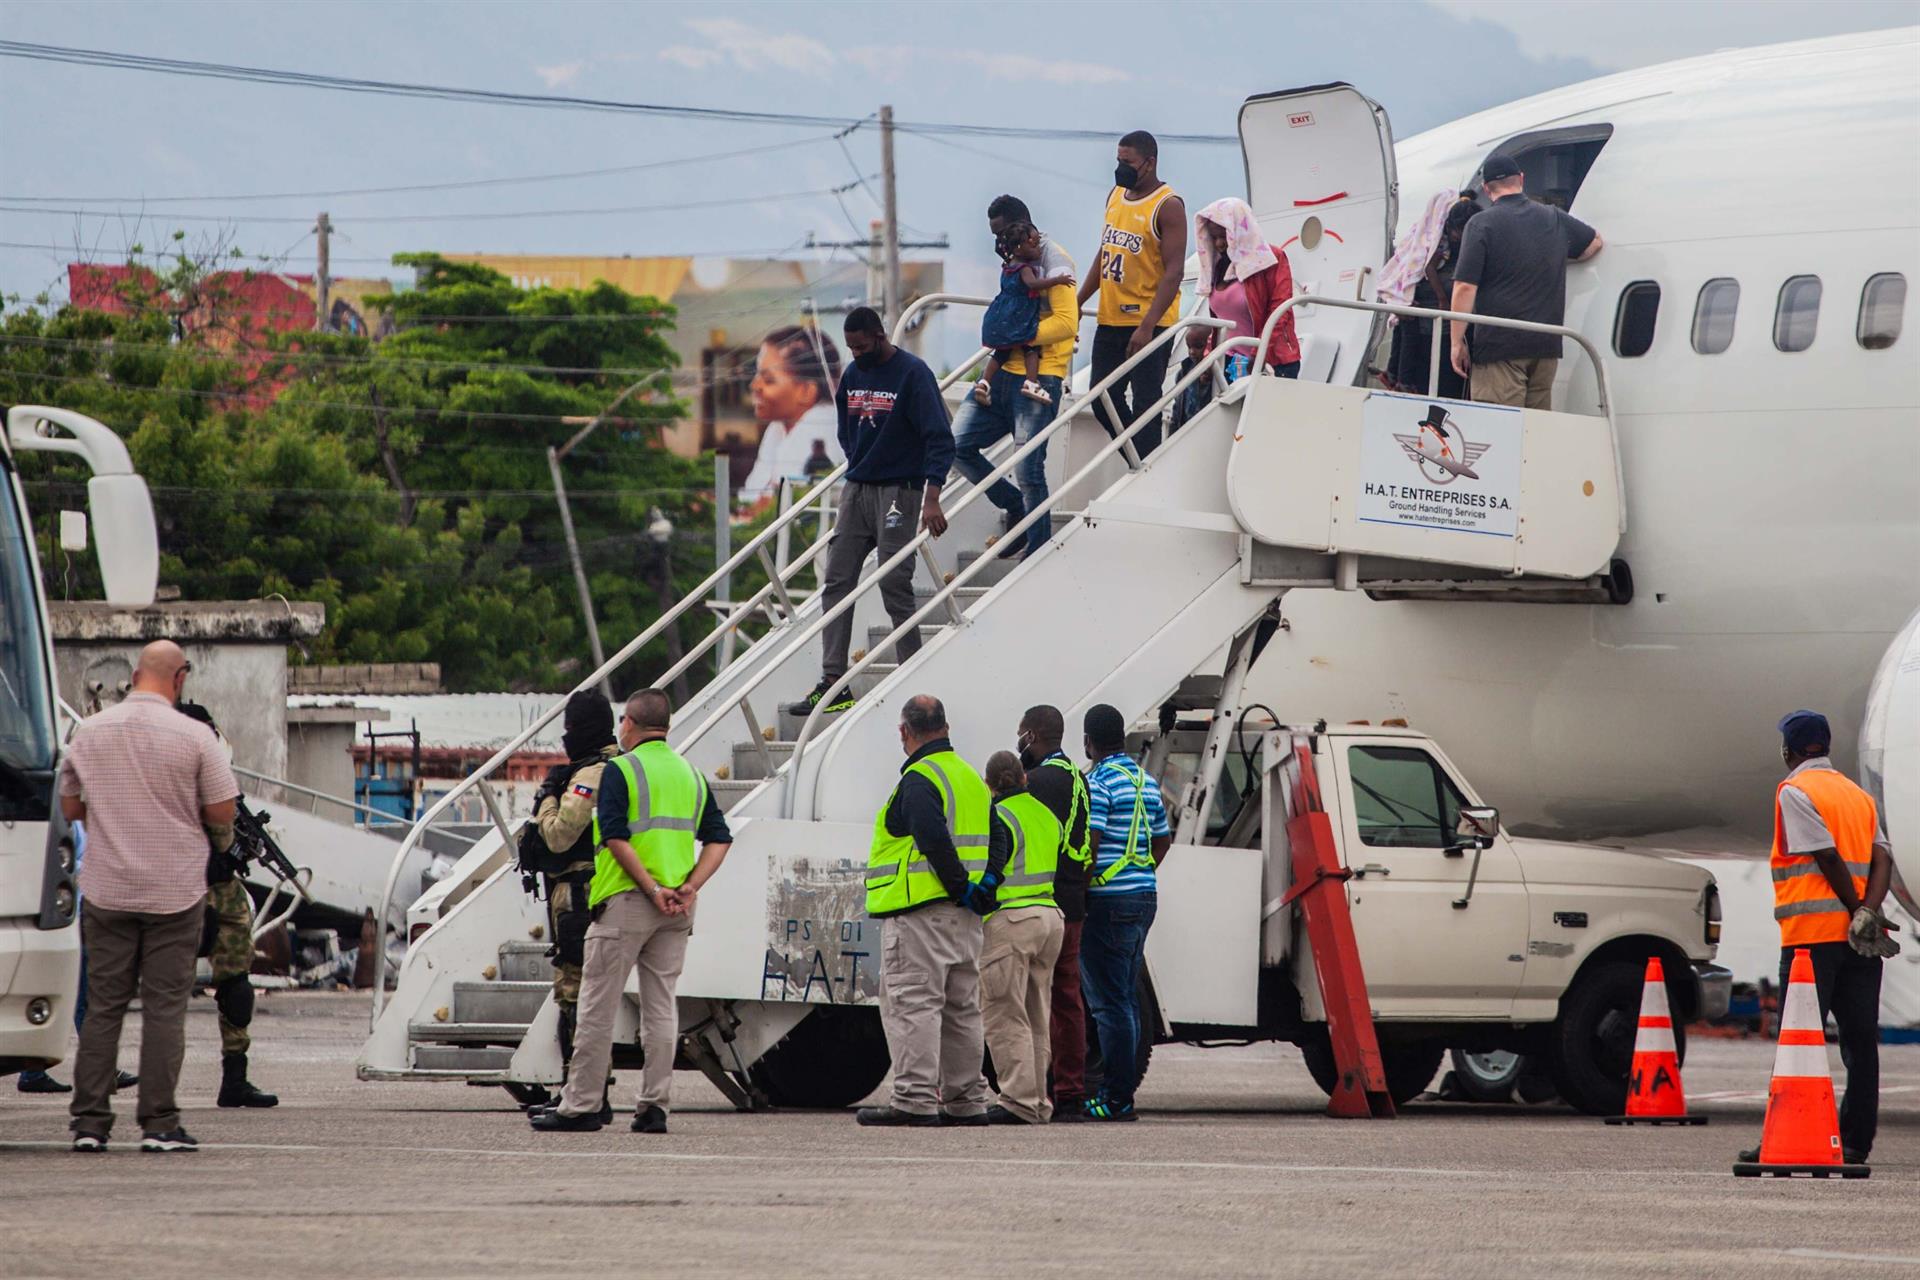 EEUU ha deportado a más de 1.400 haitianos (VIDEO)